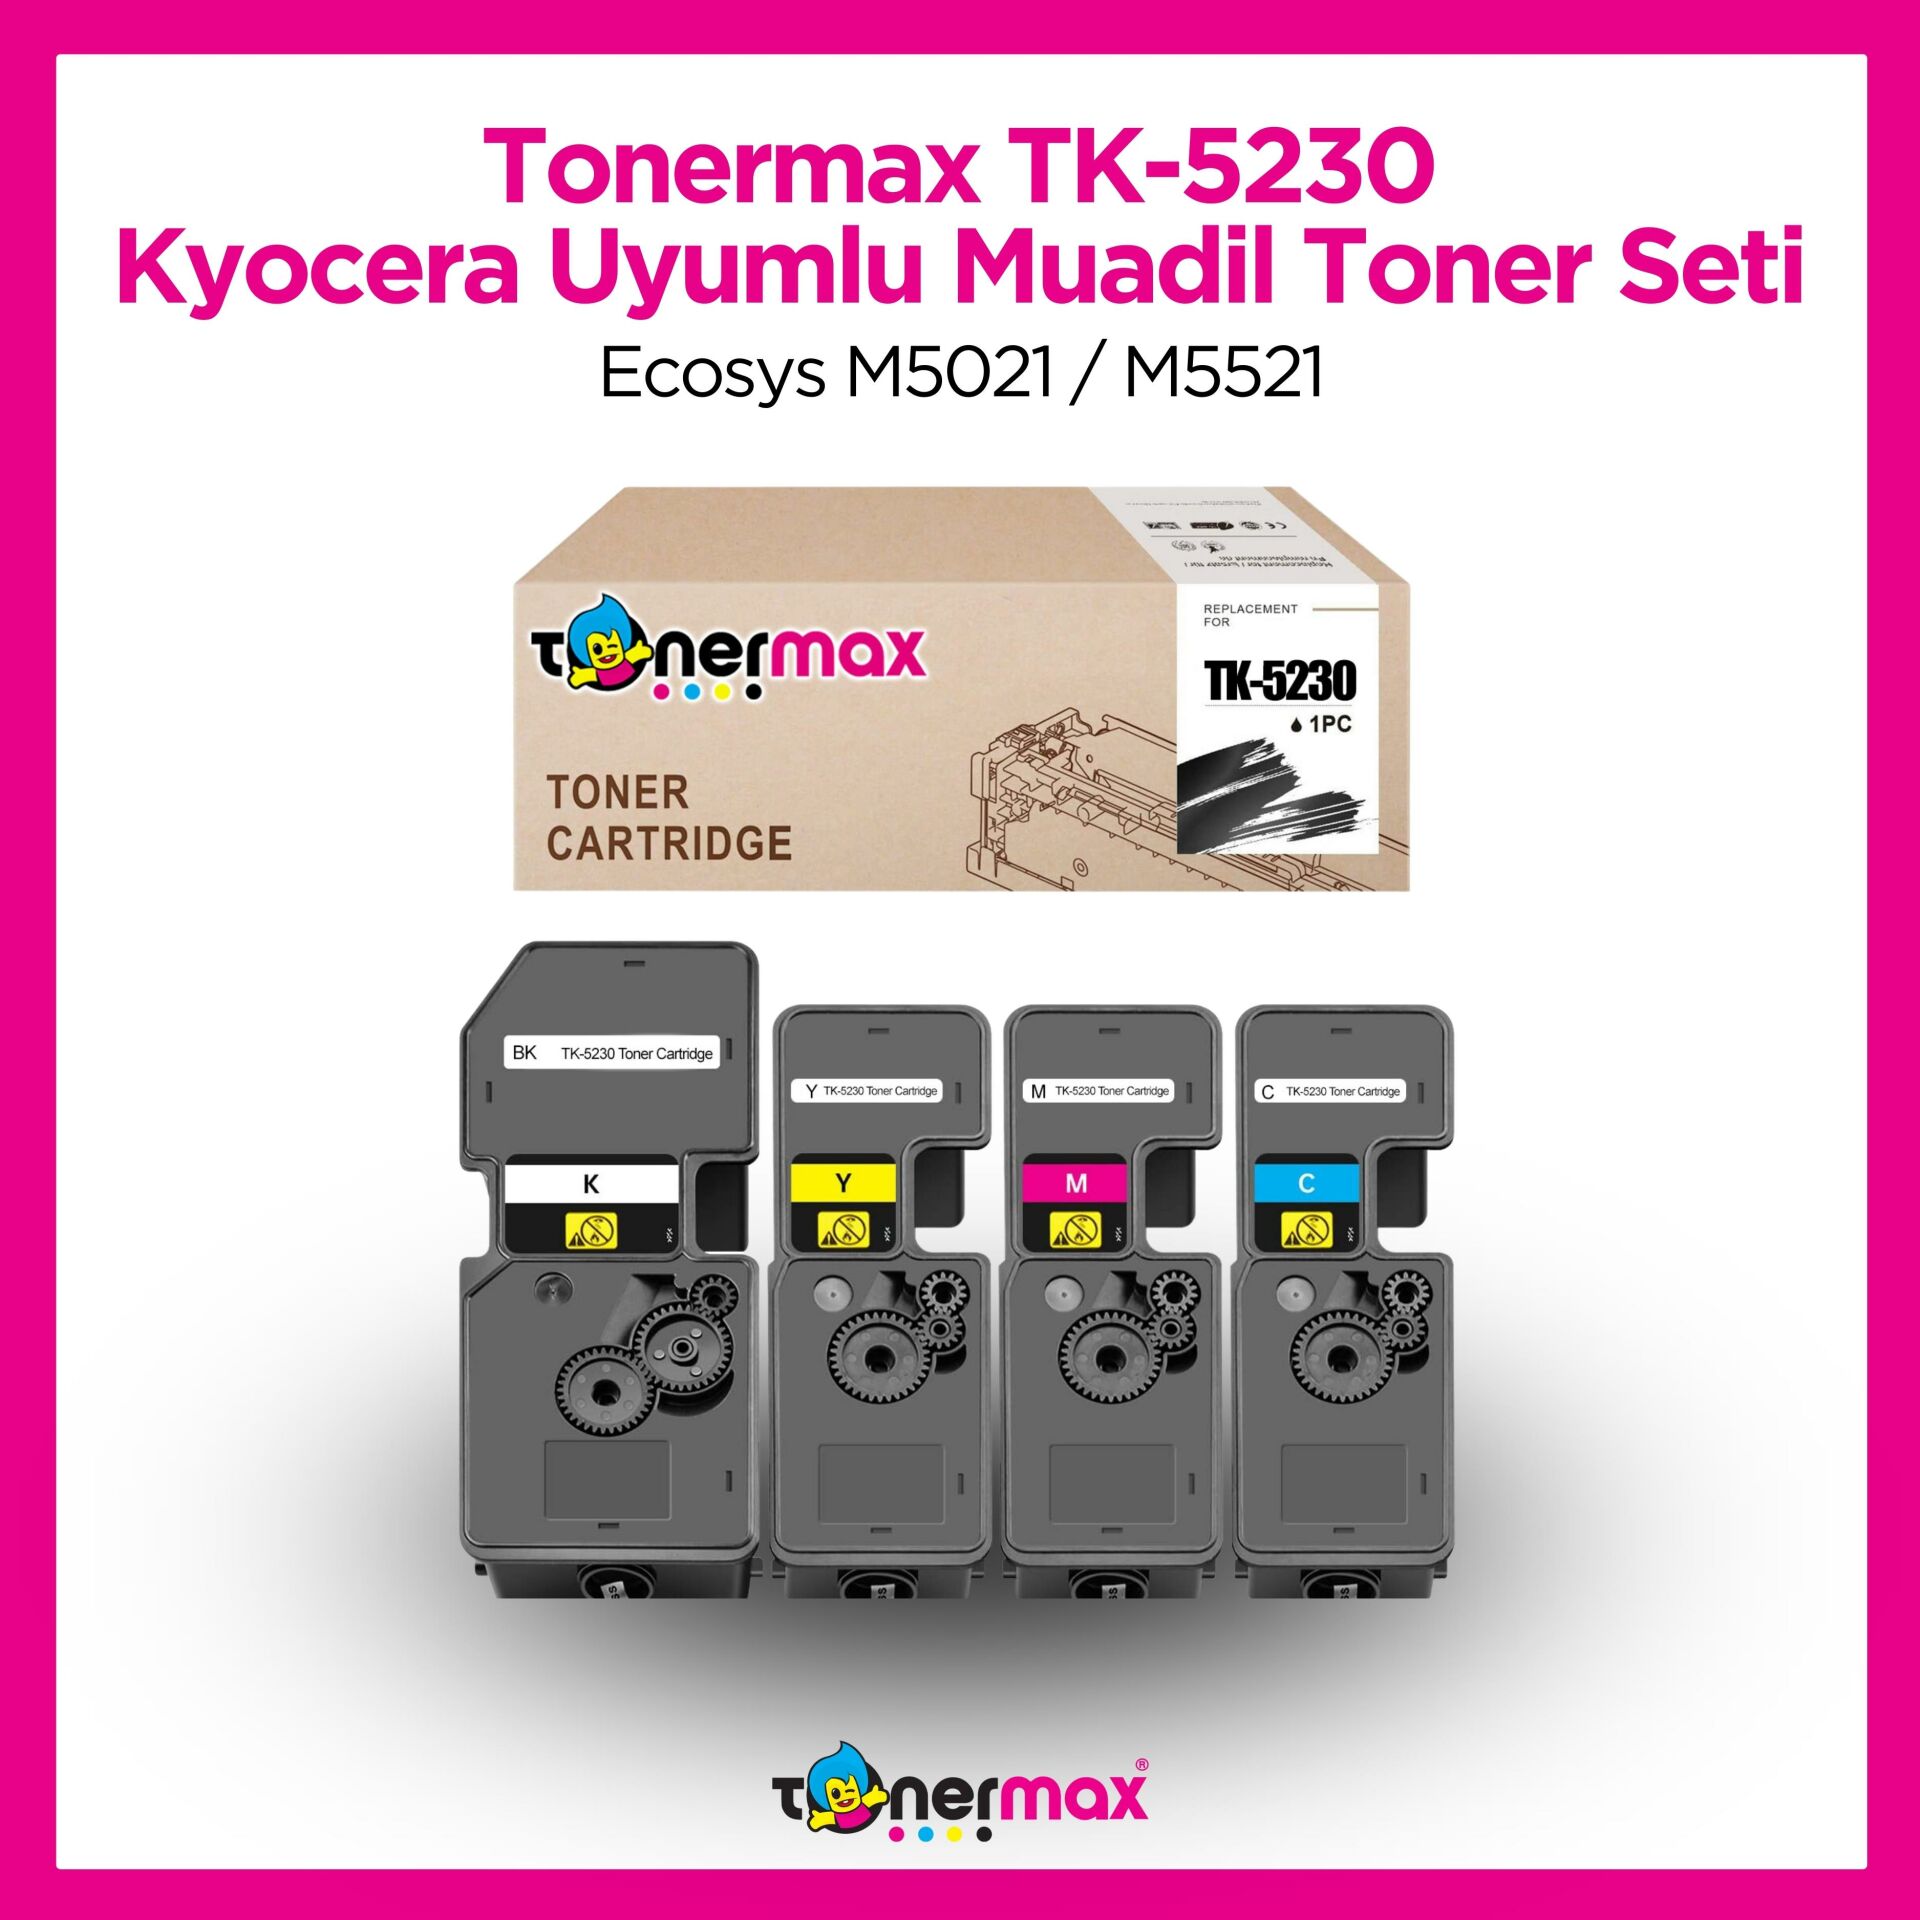 Kyocera TK-5230 Muadil Toner Seti / Ecosys M5021 / M5521